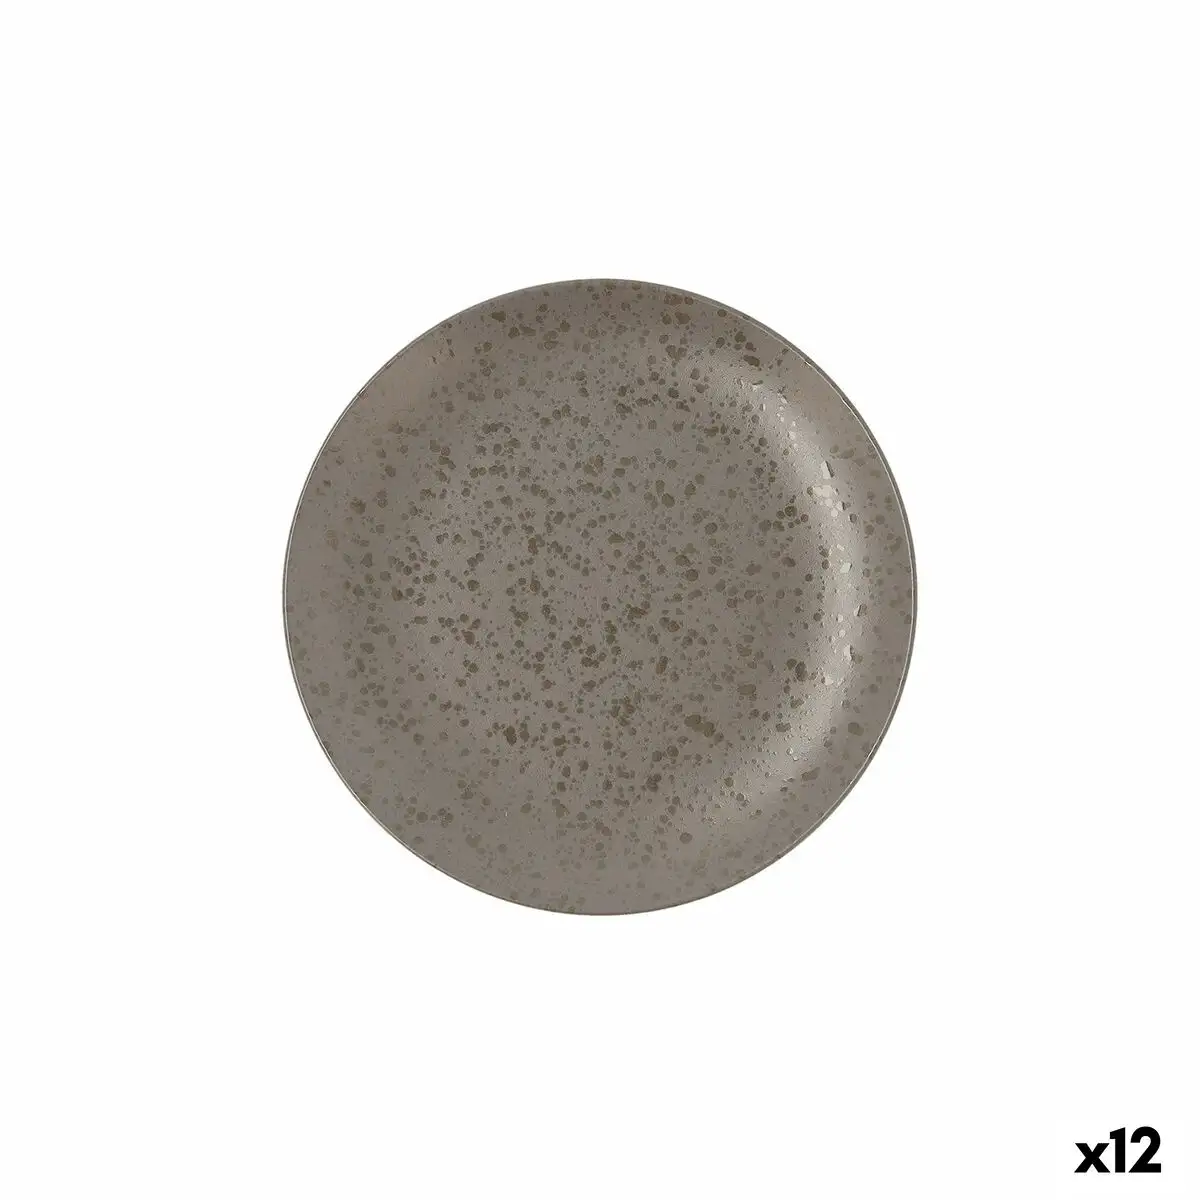 Assiette plate ariane oxide ceramique gris o 21 cm 12 unites _2218. DIAYTAR SENEGAL - Où Choisir Devient une Découverte. Explorez notre boutique en ligne et trouvez des articles qui vous surprennent et vous ravissent à chaque clic.